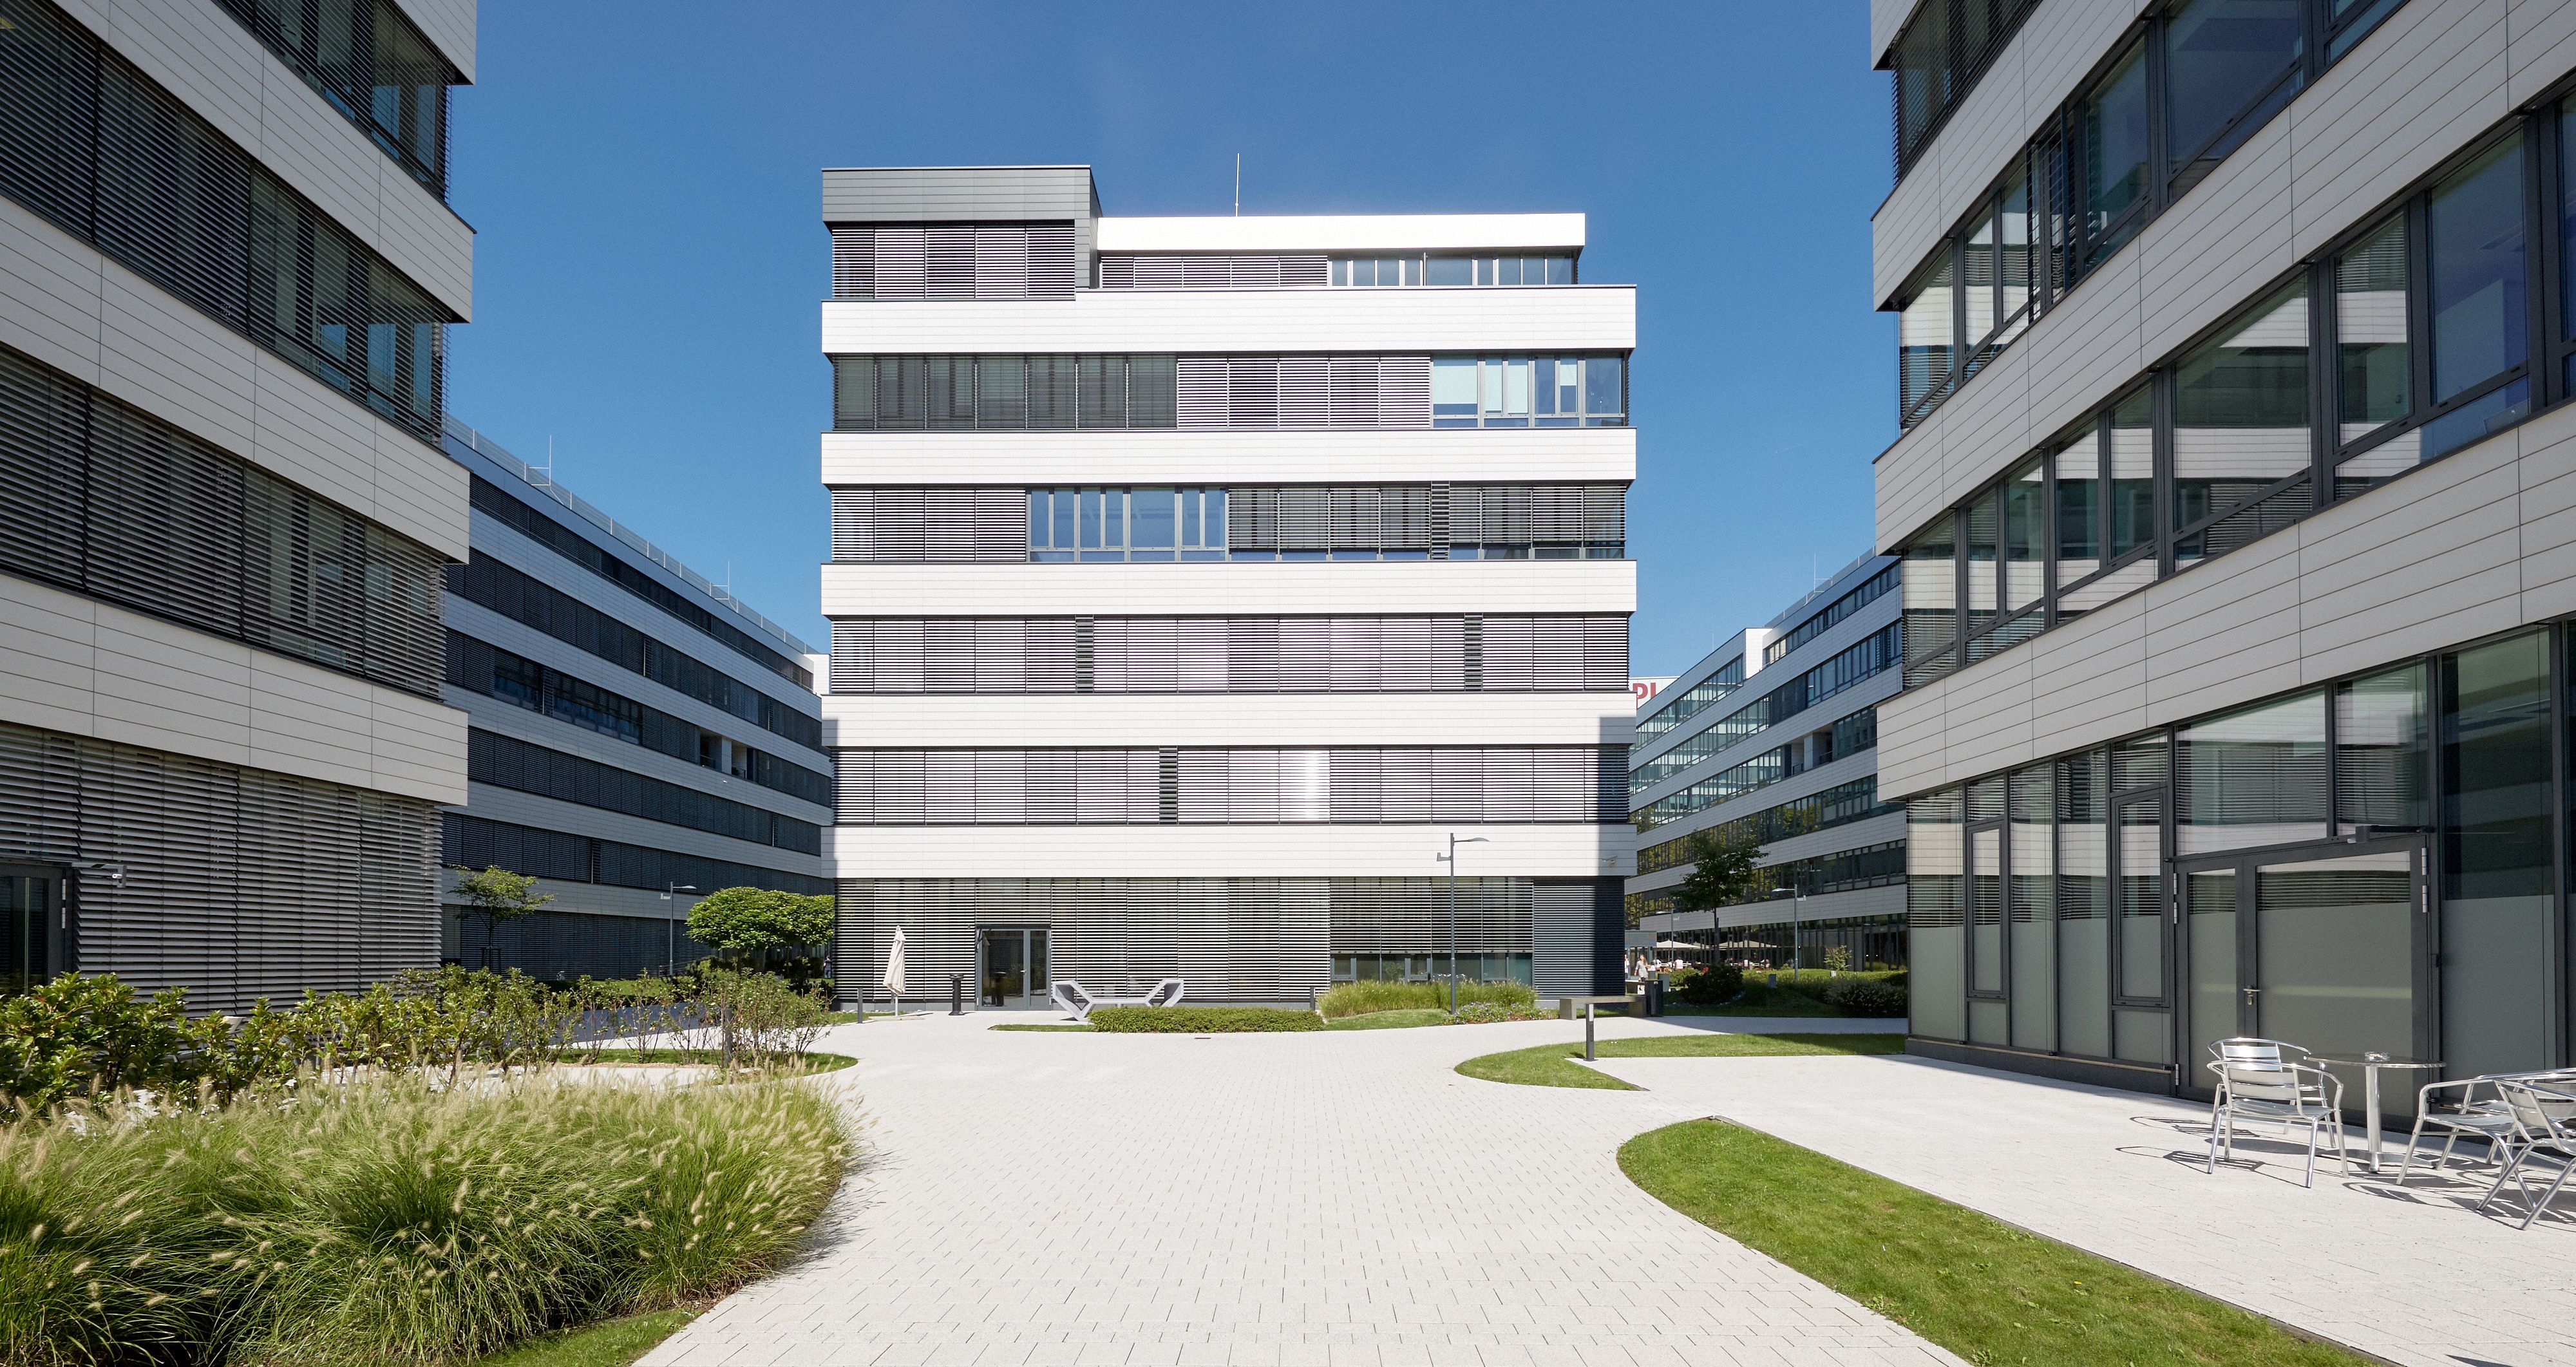 Foto: sauber gepflasterte Fläche umsäumt von Grünflächen und umgeben von hochmodernen Bürogebäuden mit jeweils sechs Geschoßen und Alu-Glasfassade 